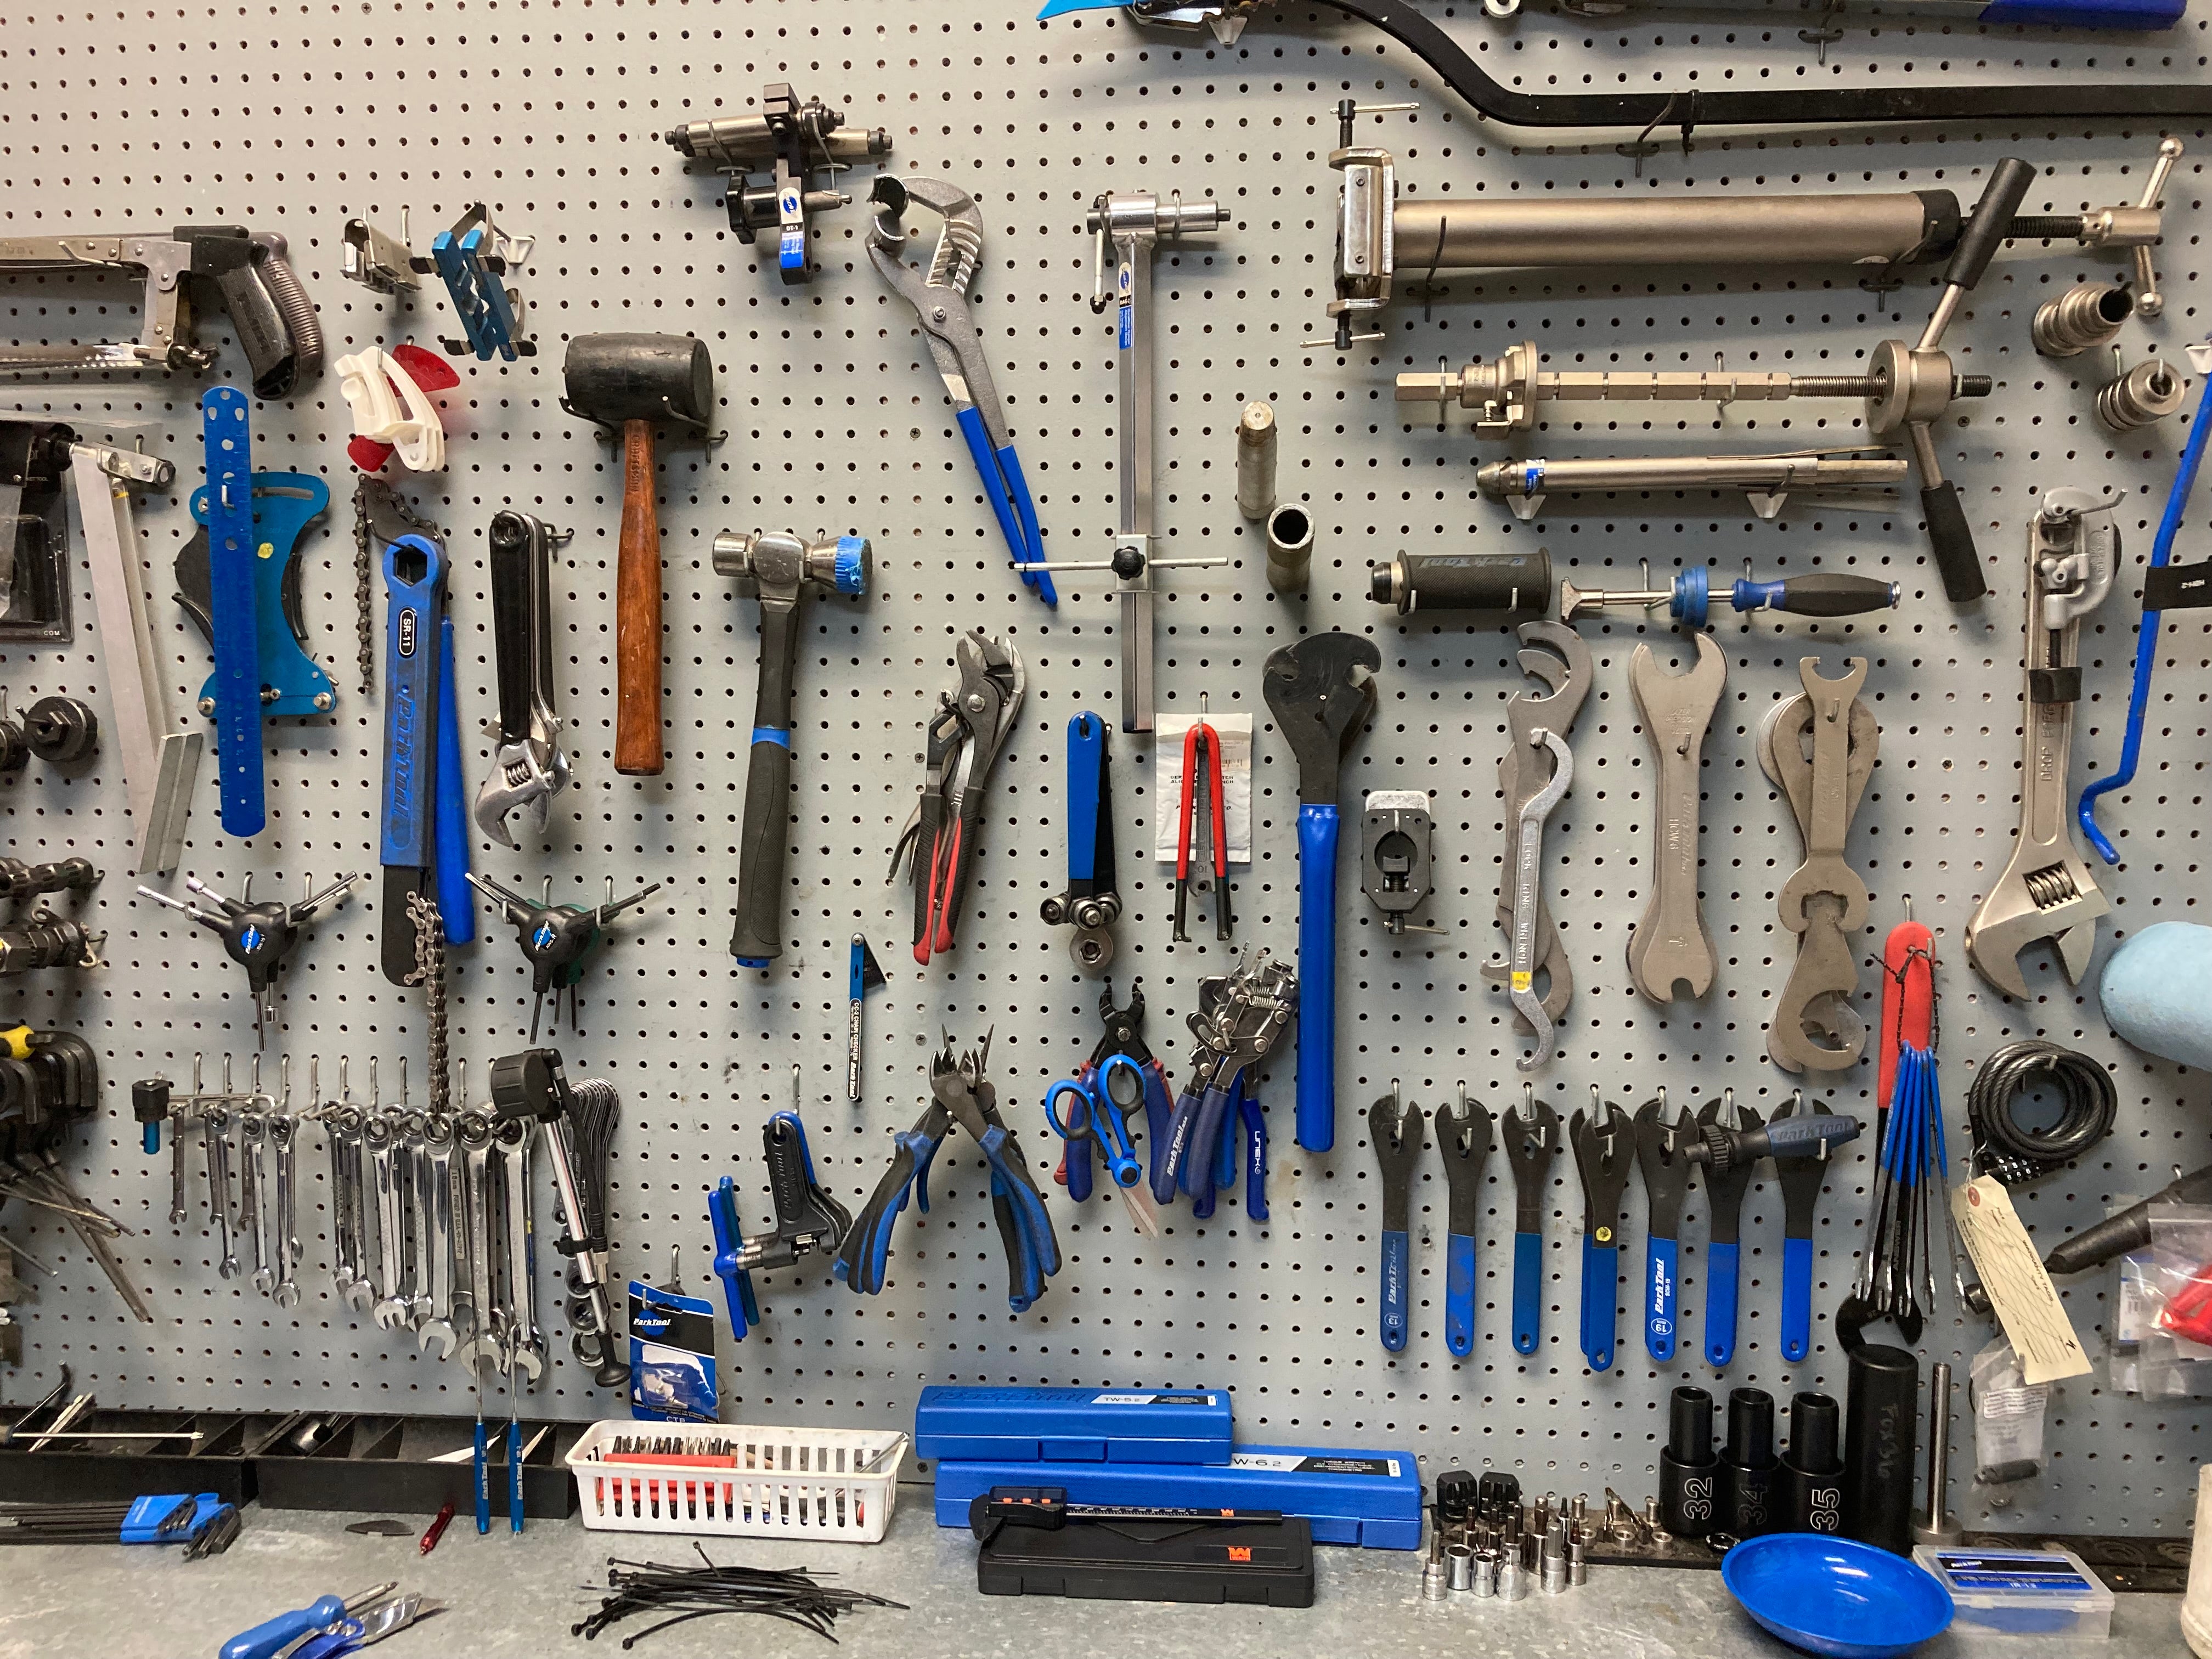 Multi Tools